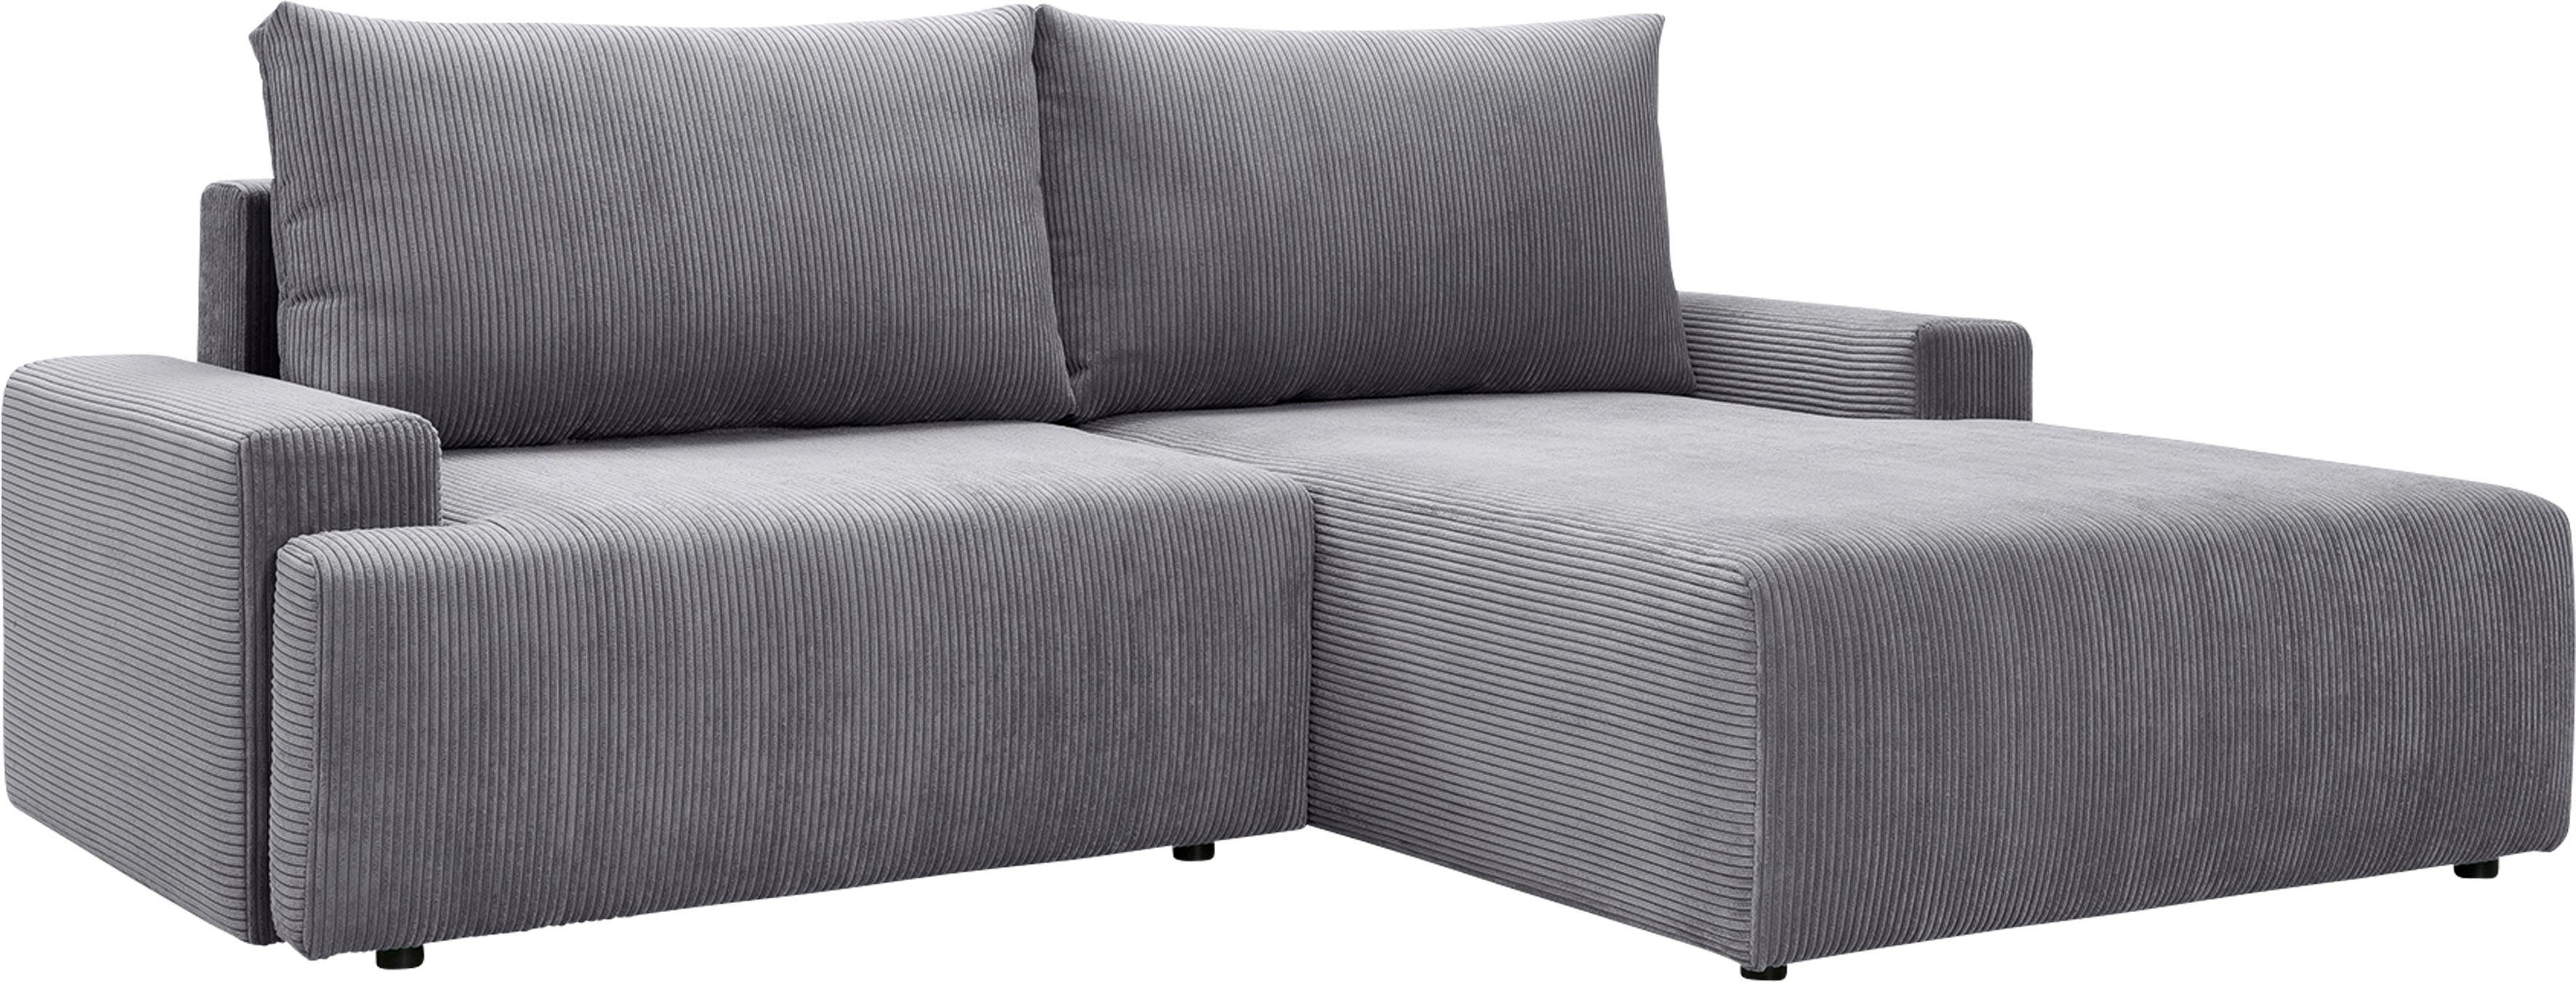 exxpo - Cord-Farben grey sofa Ecksofa und Orinoko, fashion in verschiedenen inklusive Bettkasten Bettfunktion